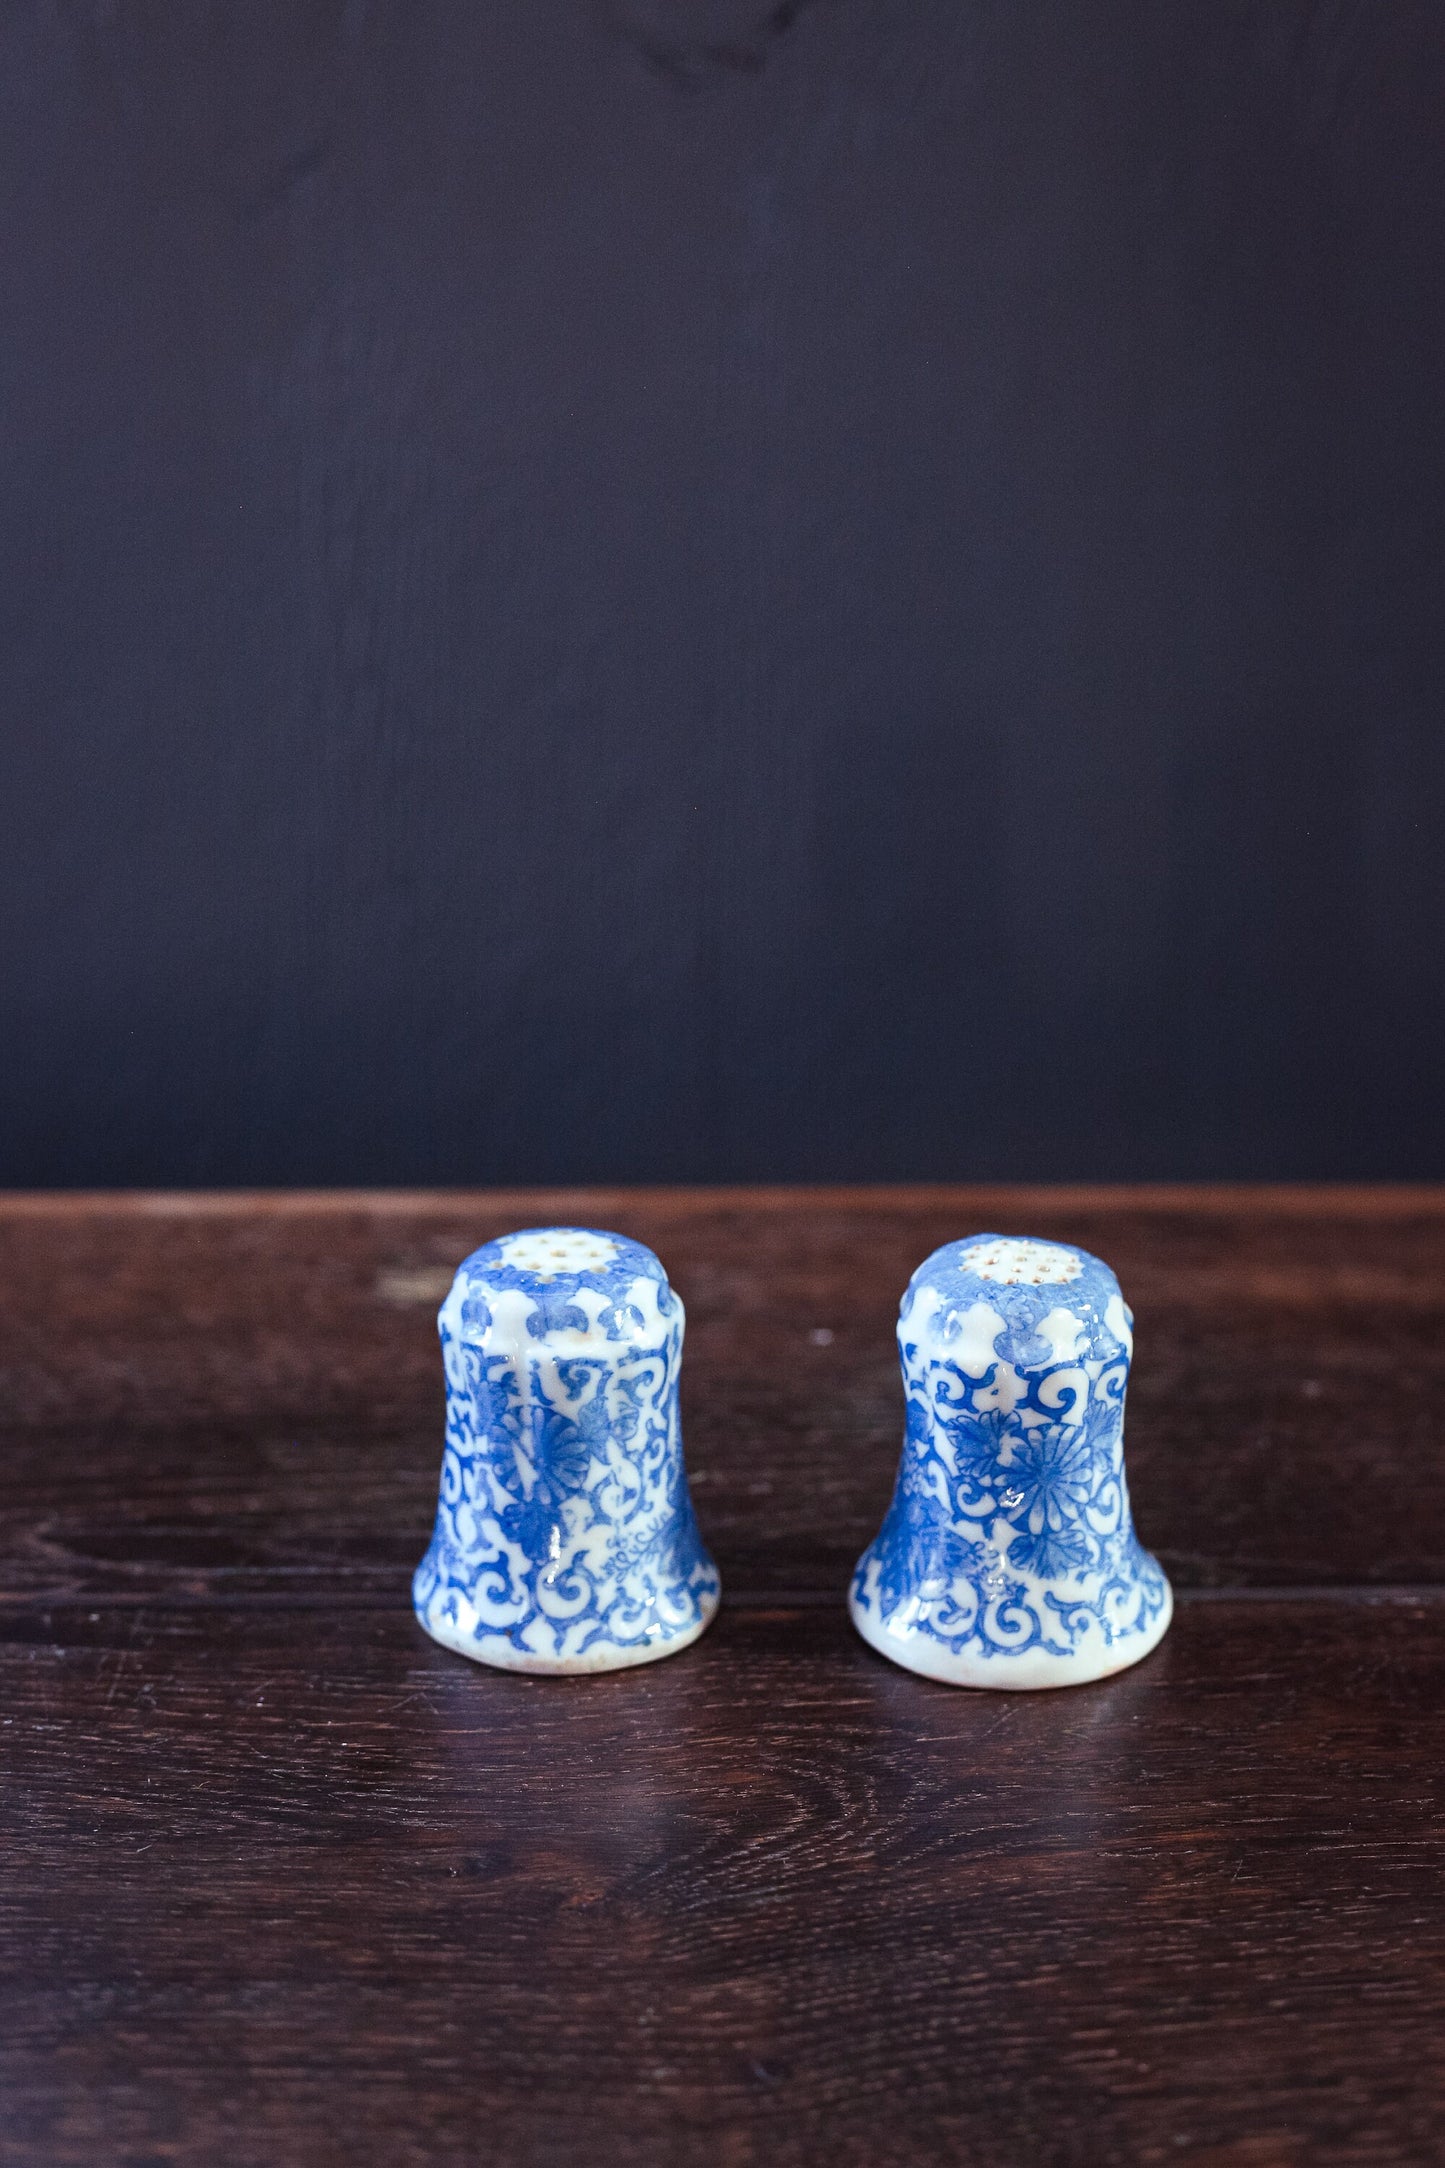 Blue White Porcelain Salt & Pepper Transfer Print - Vintage Japanese Porcelain Salt Pepper Shaker Set